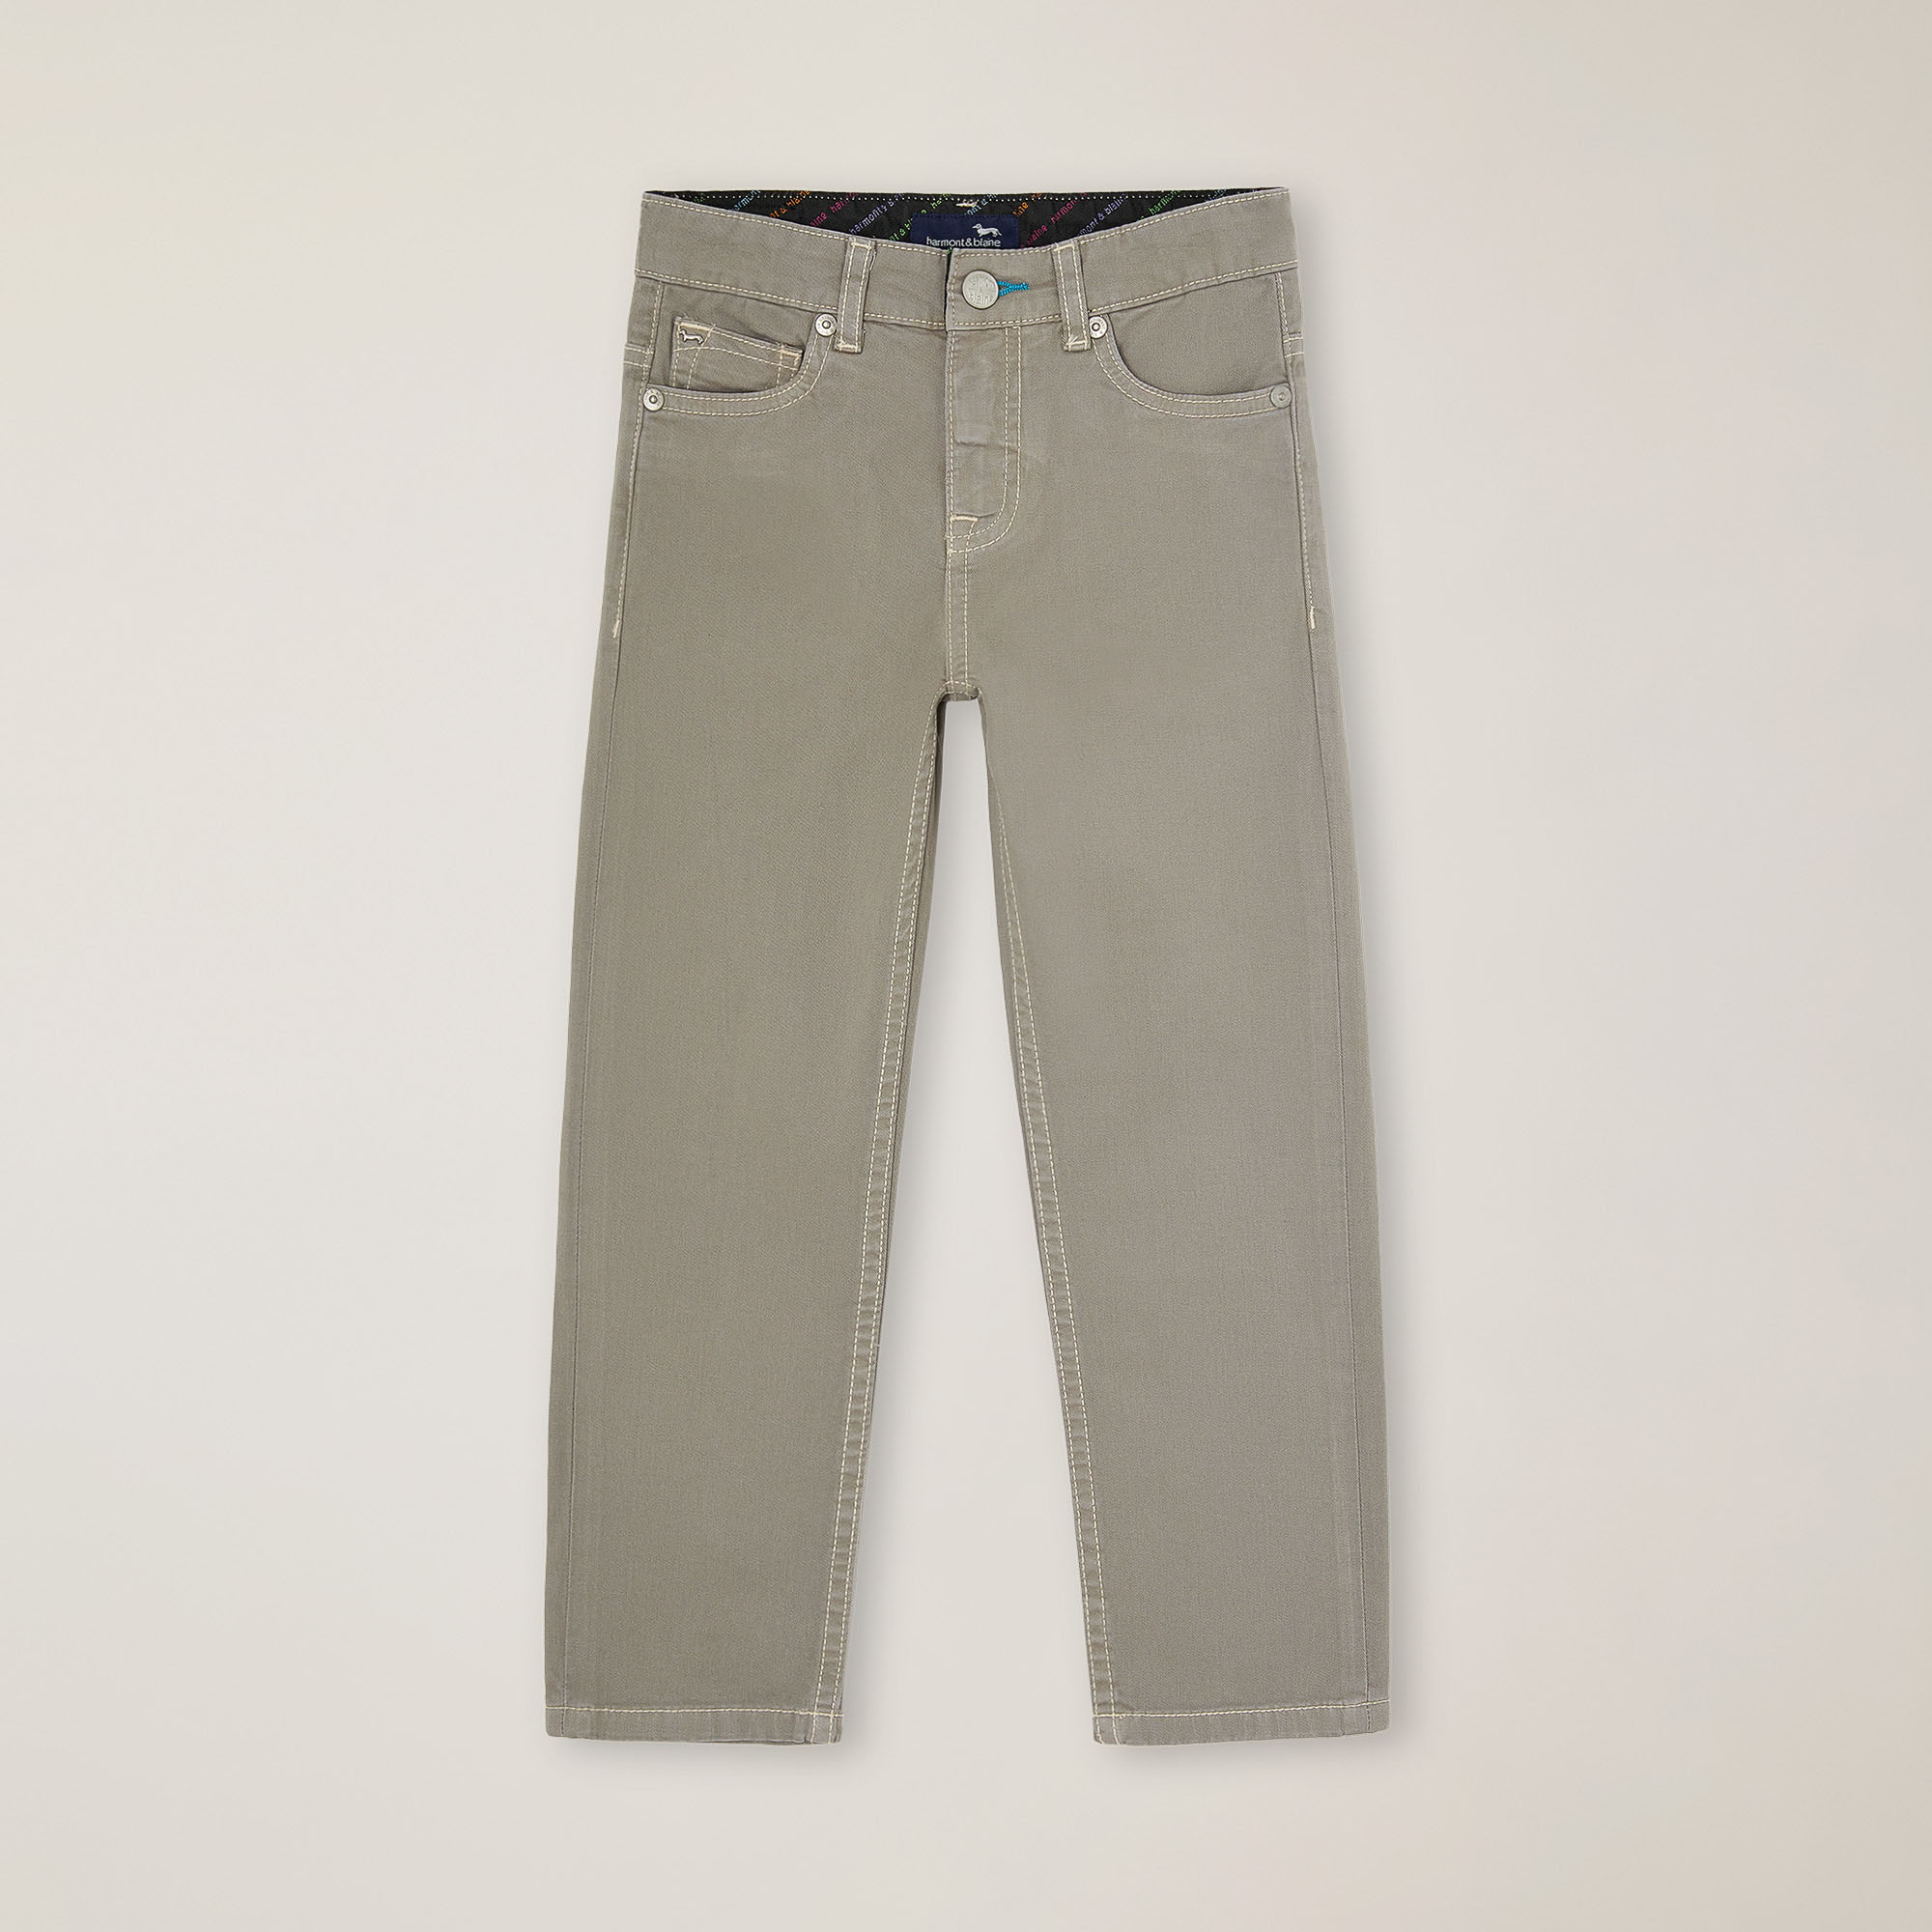 Pantaloni 5 tasche con ricamo sul retro, Grigio Perla, large